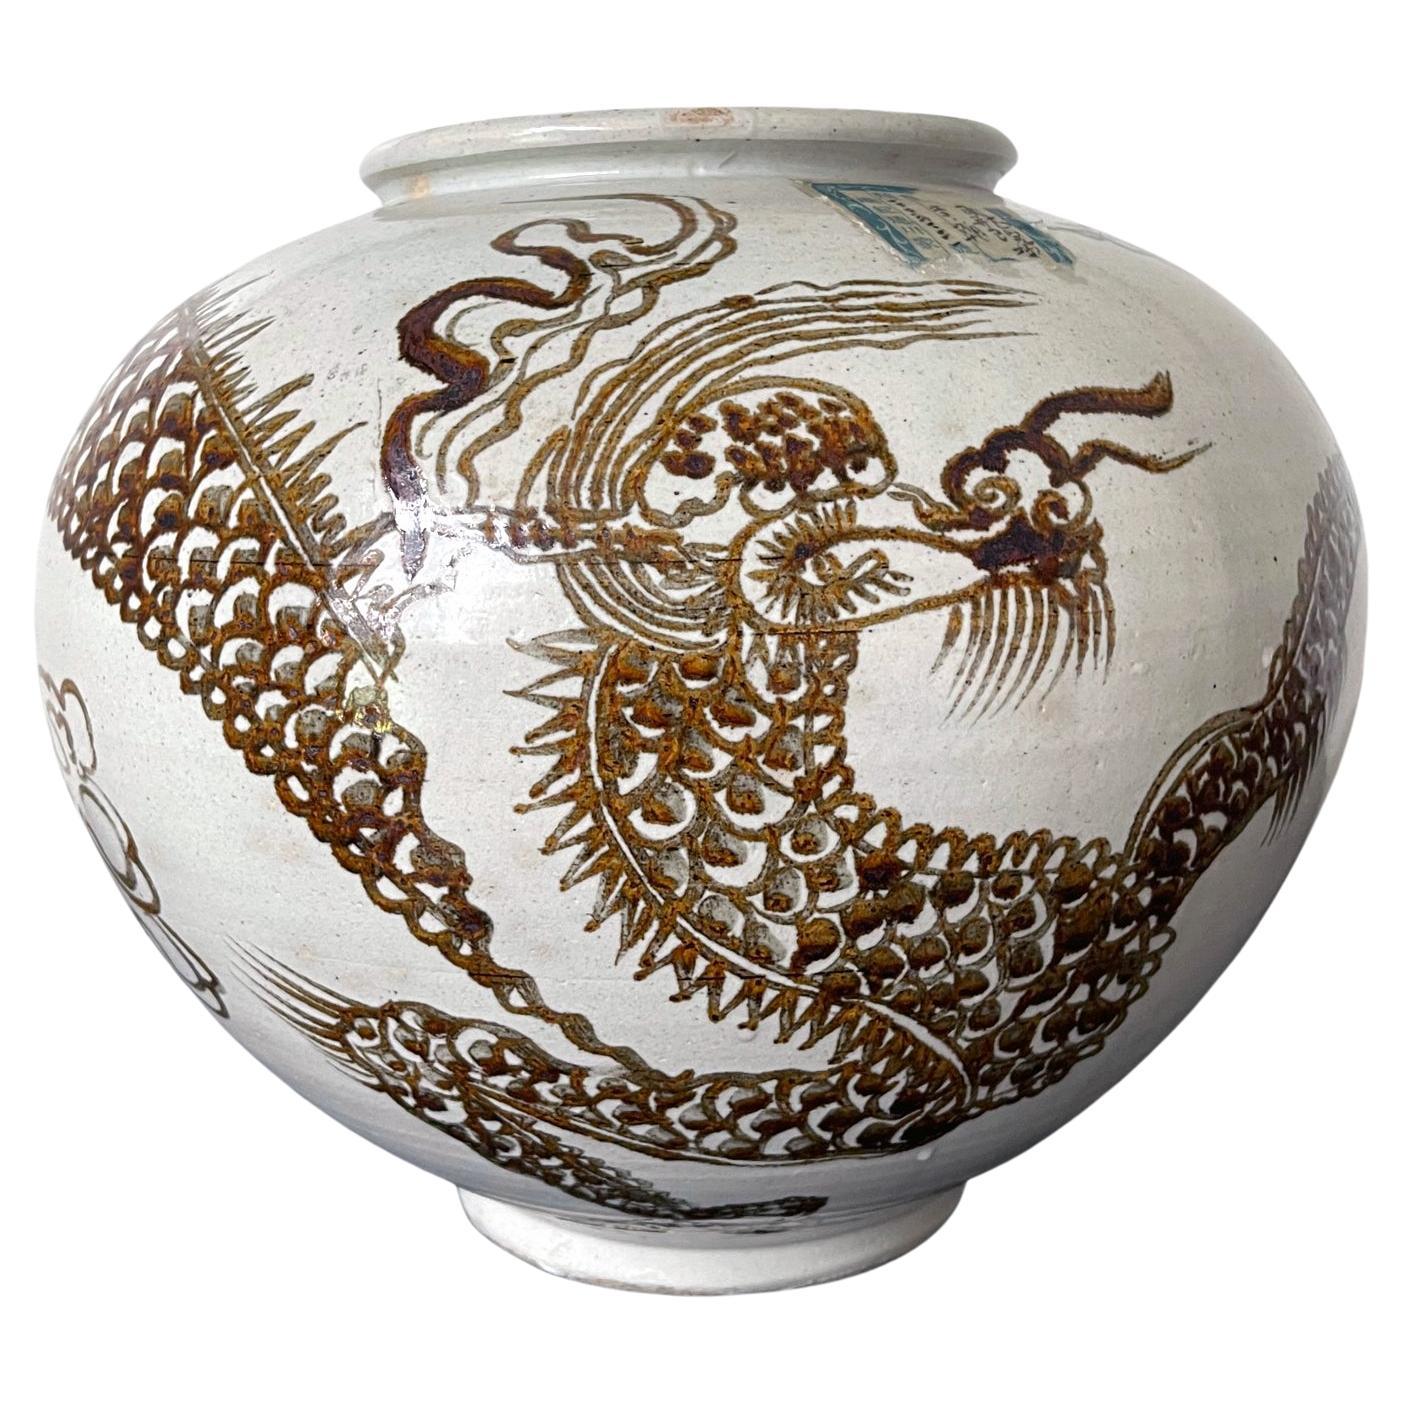 Koreanisches Keramik-Mondglas mit Drachen aus der Joseon-Dynastie